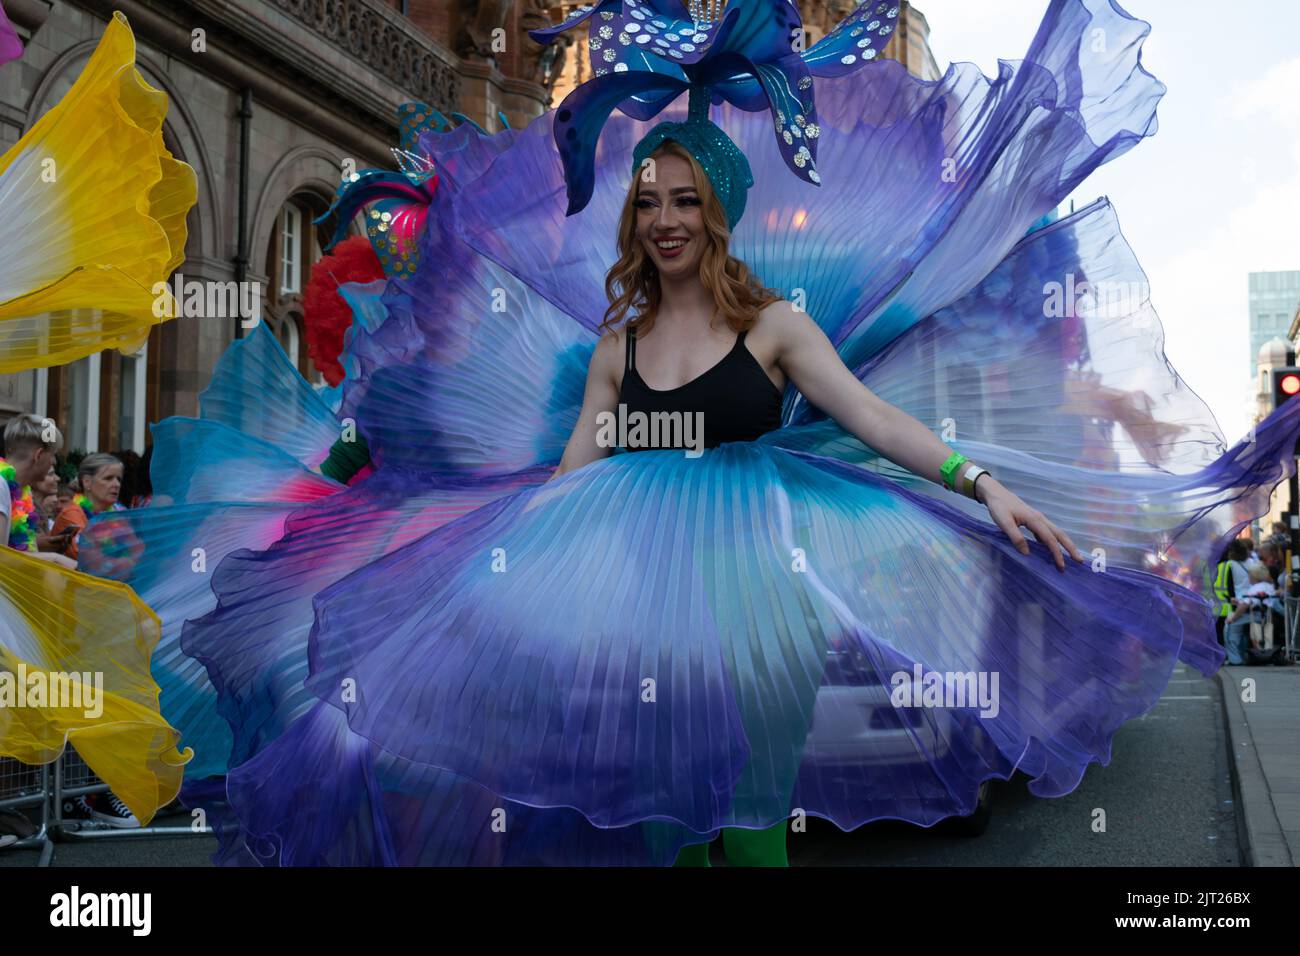 Défilé de la fierté de Manchester. Femme en costume de fleur bleu. Thème Marche pour la paix. Banque D'Images